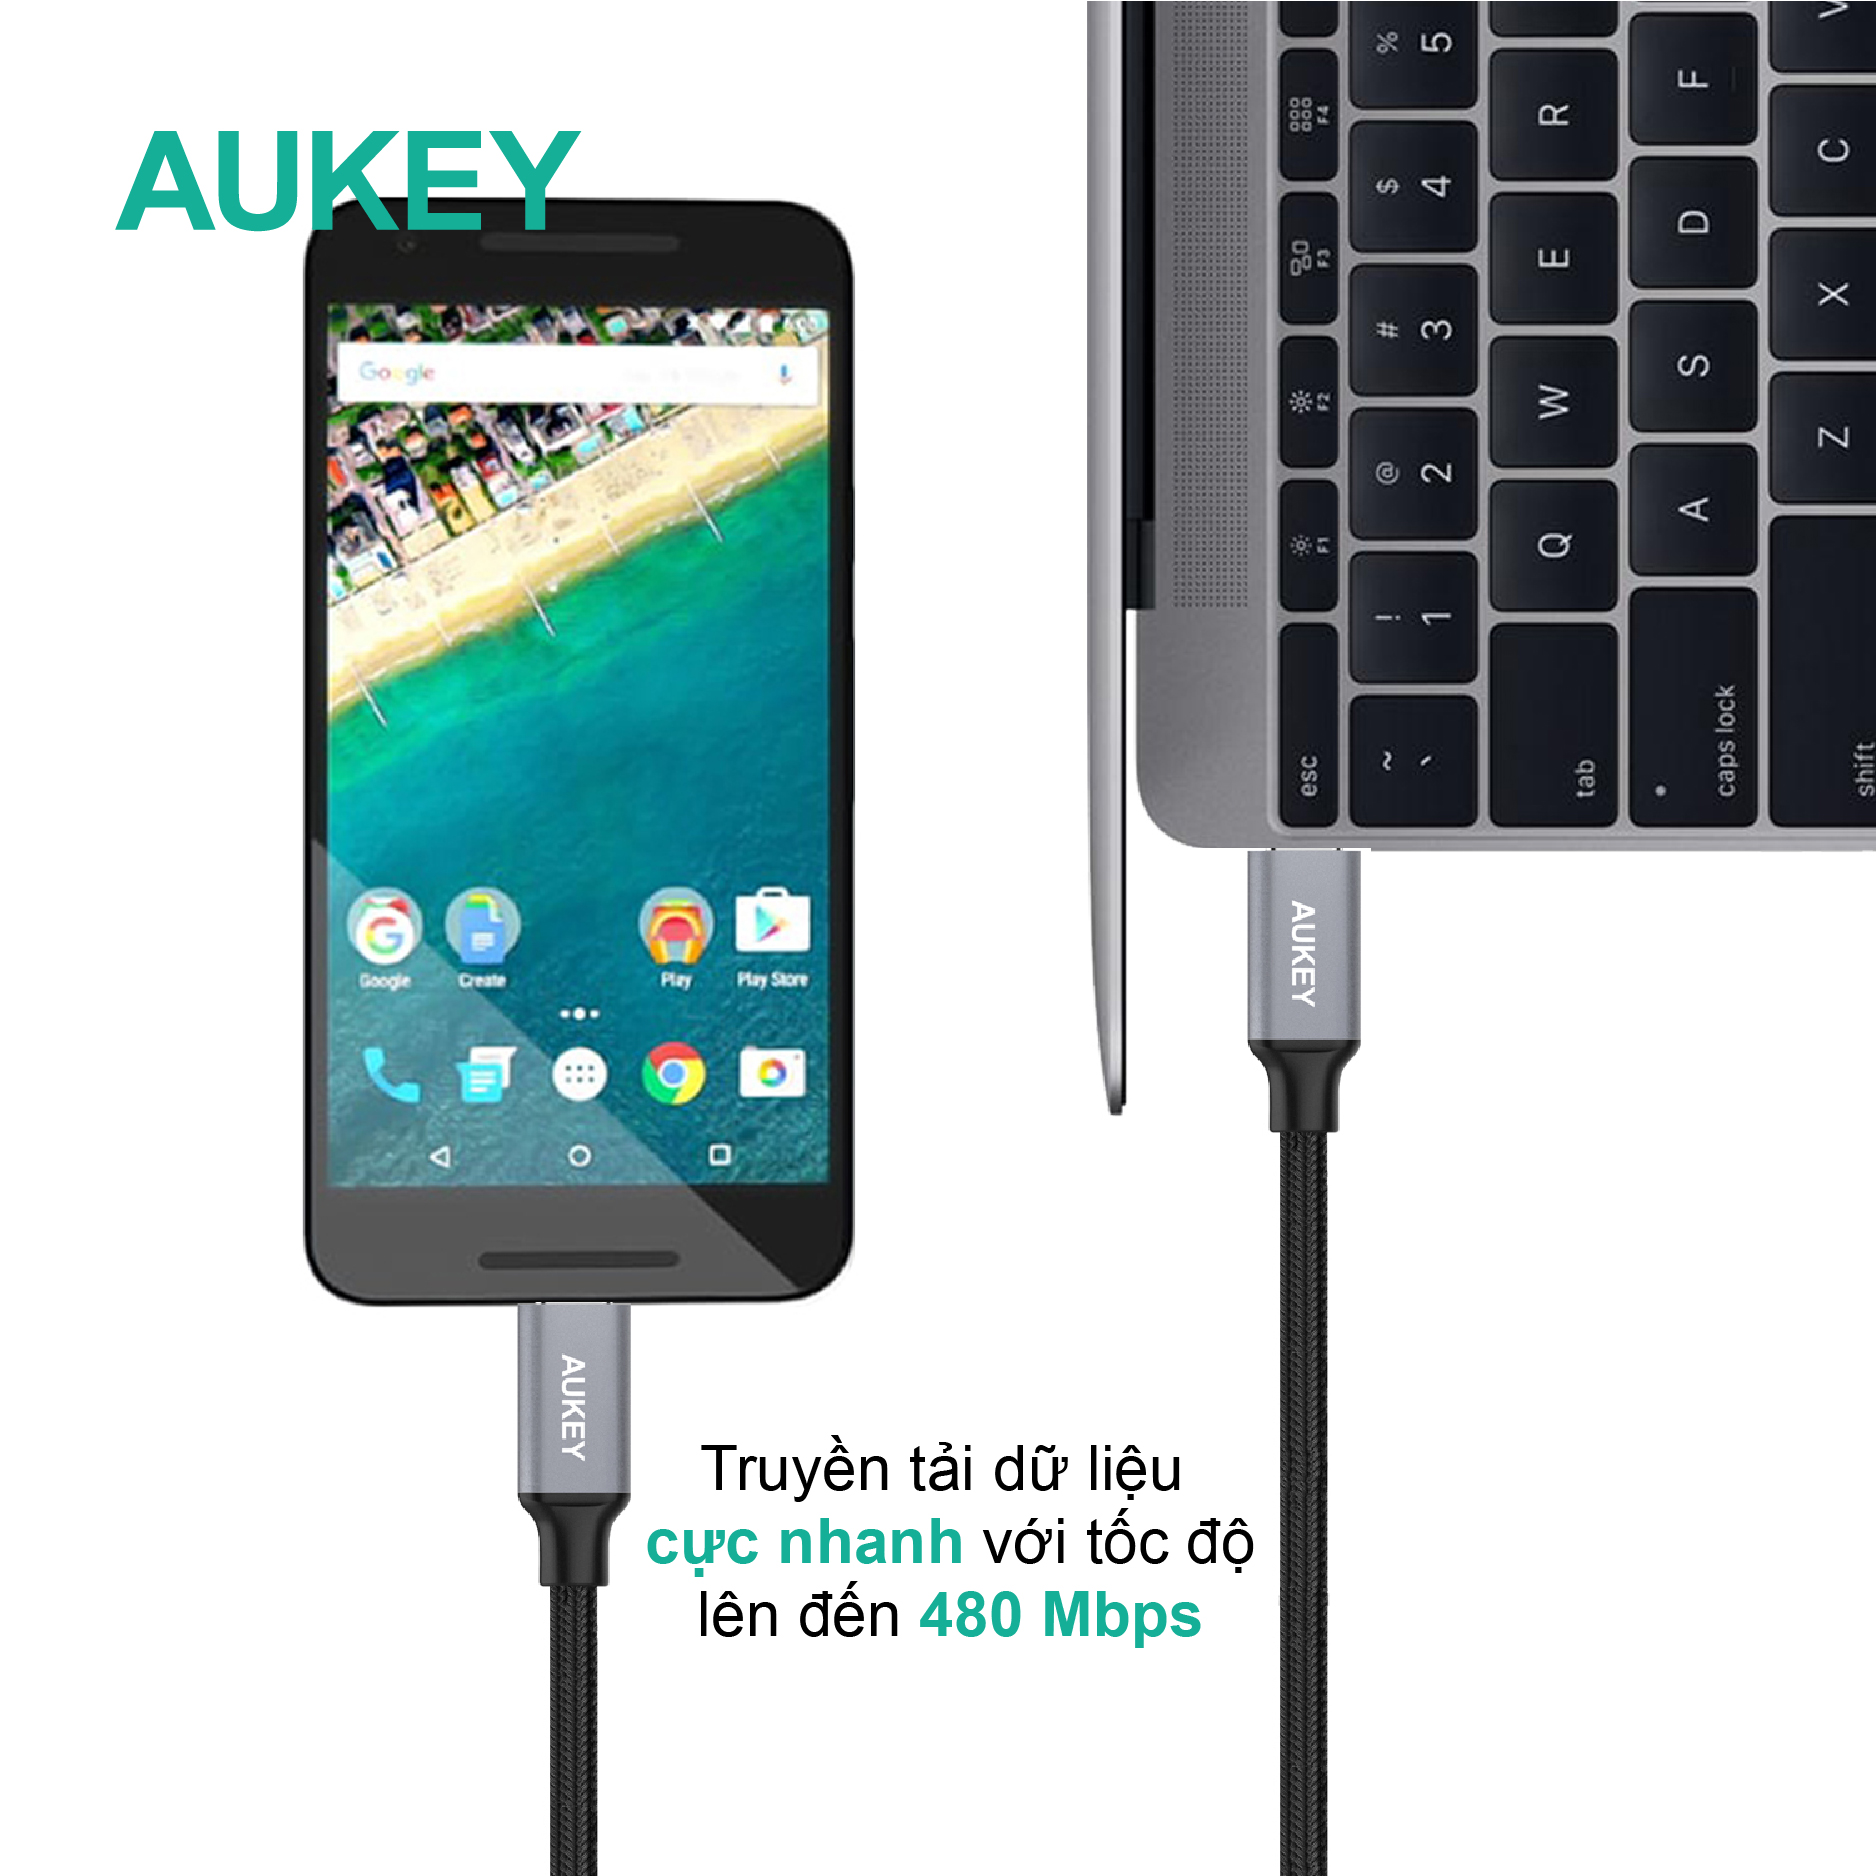 Dây cáp Aukey USB-C To USB-C 2.0 dài 1 mét Aukey CB-CD5, hàng chính hãng